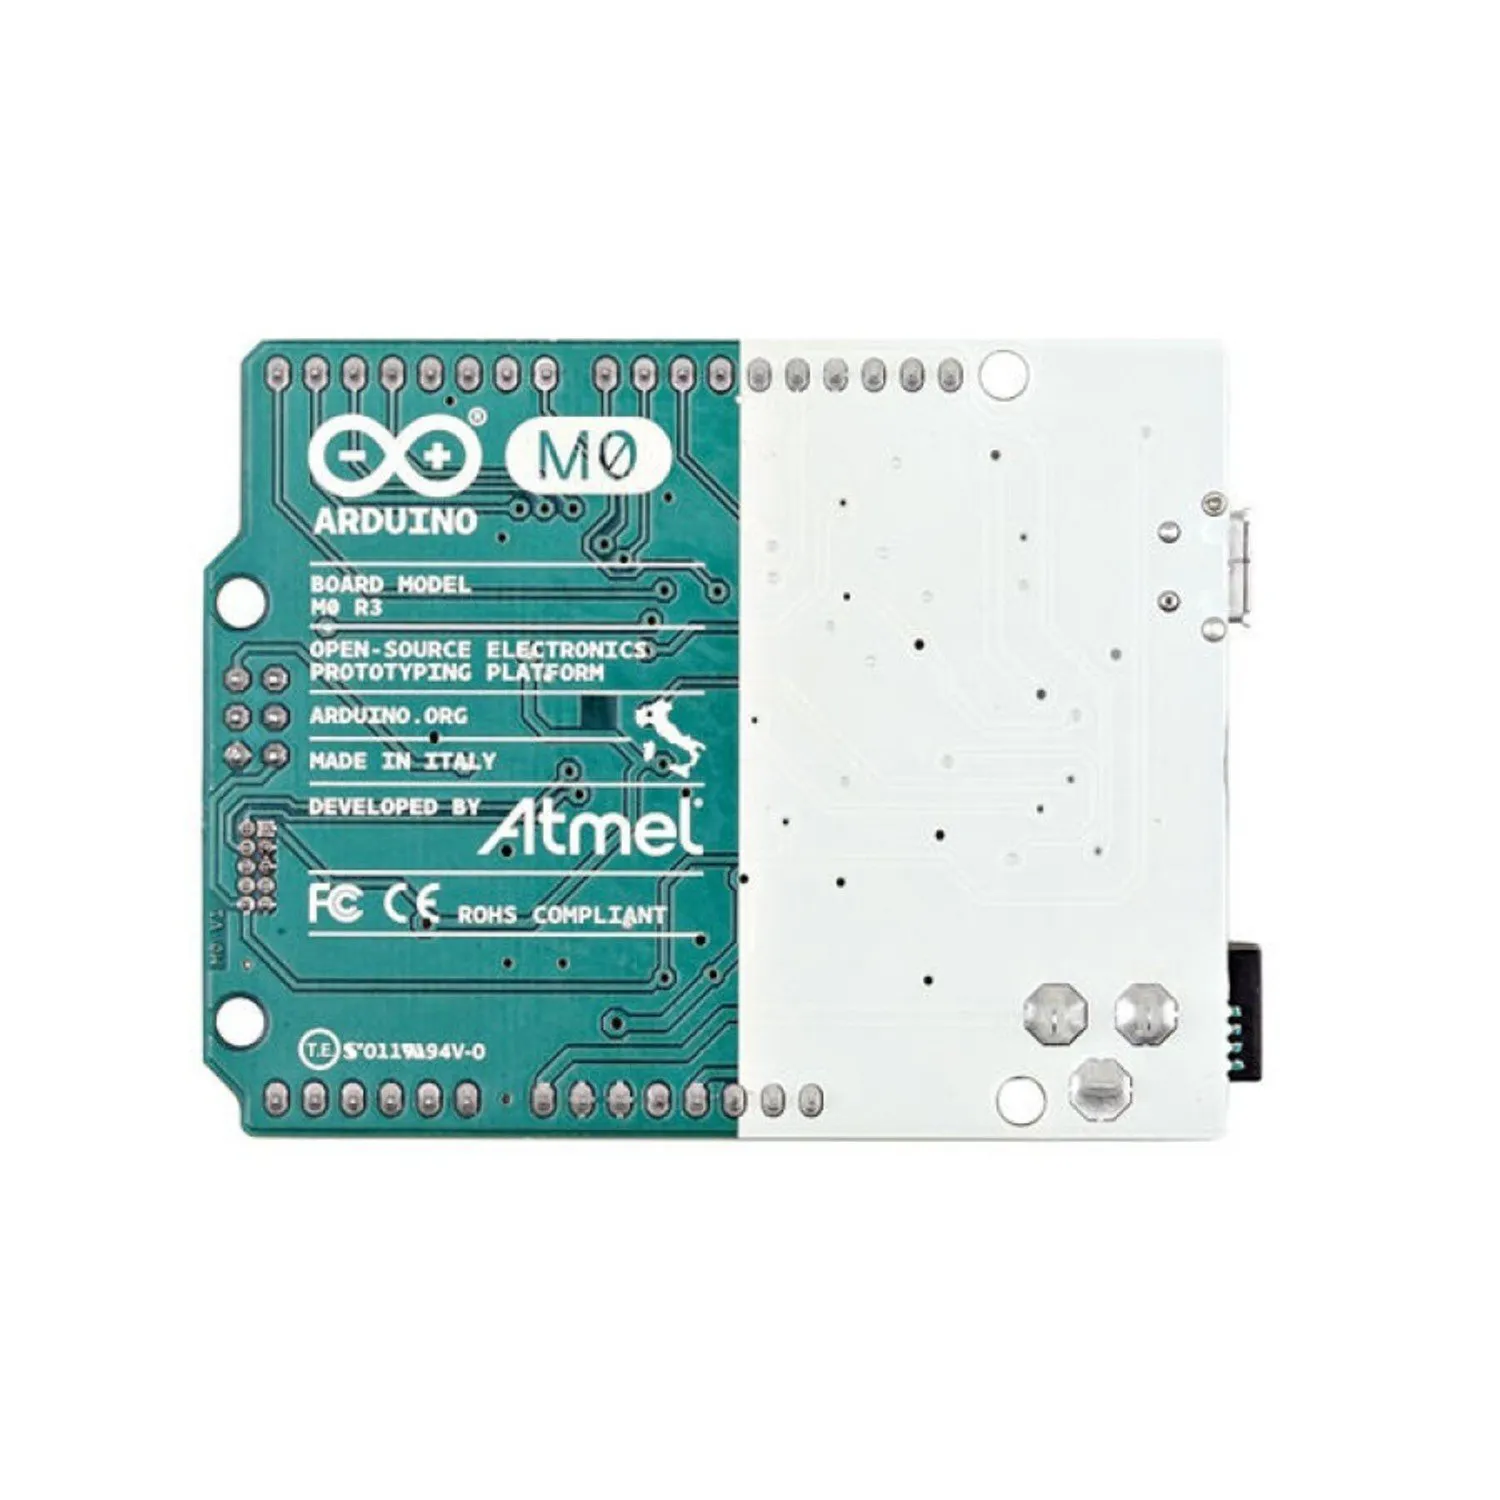 Photo of Arduino M0 - Arduino UNO platform